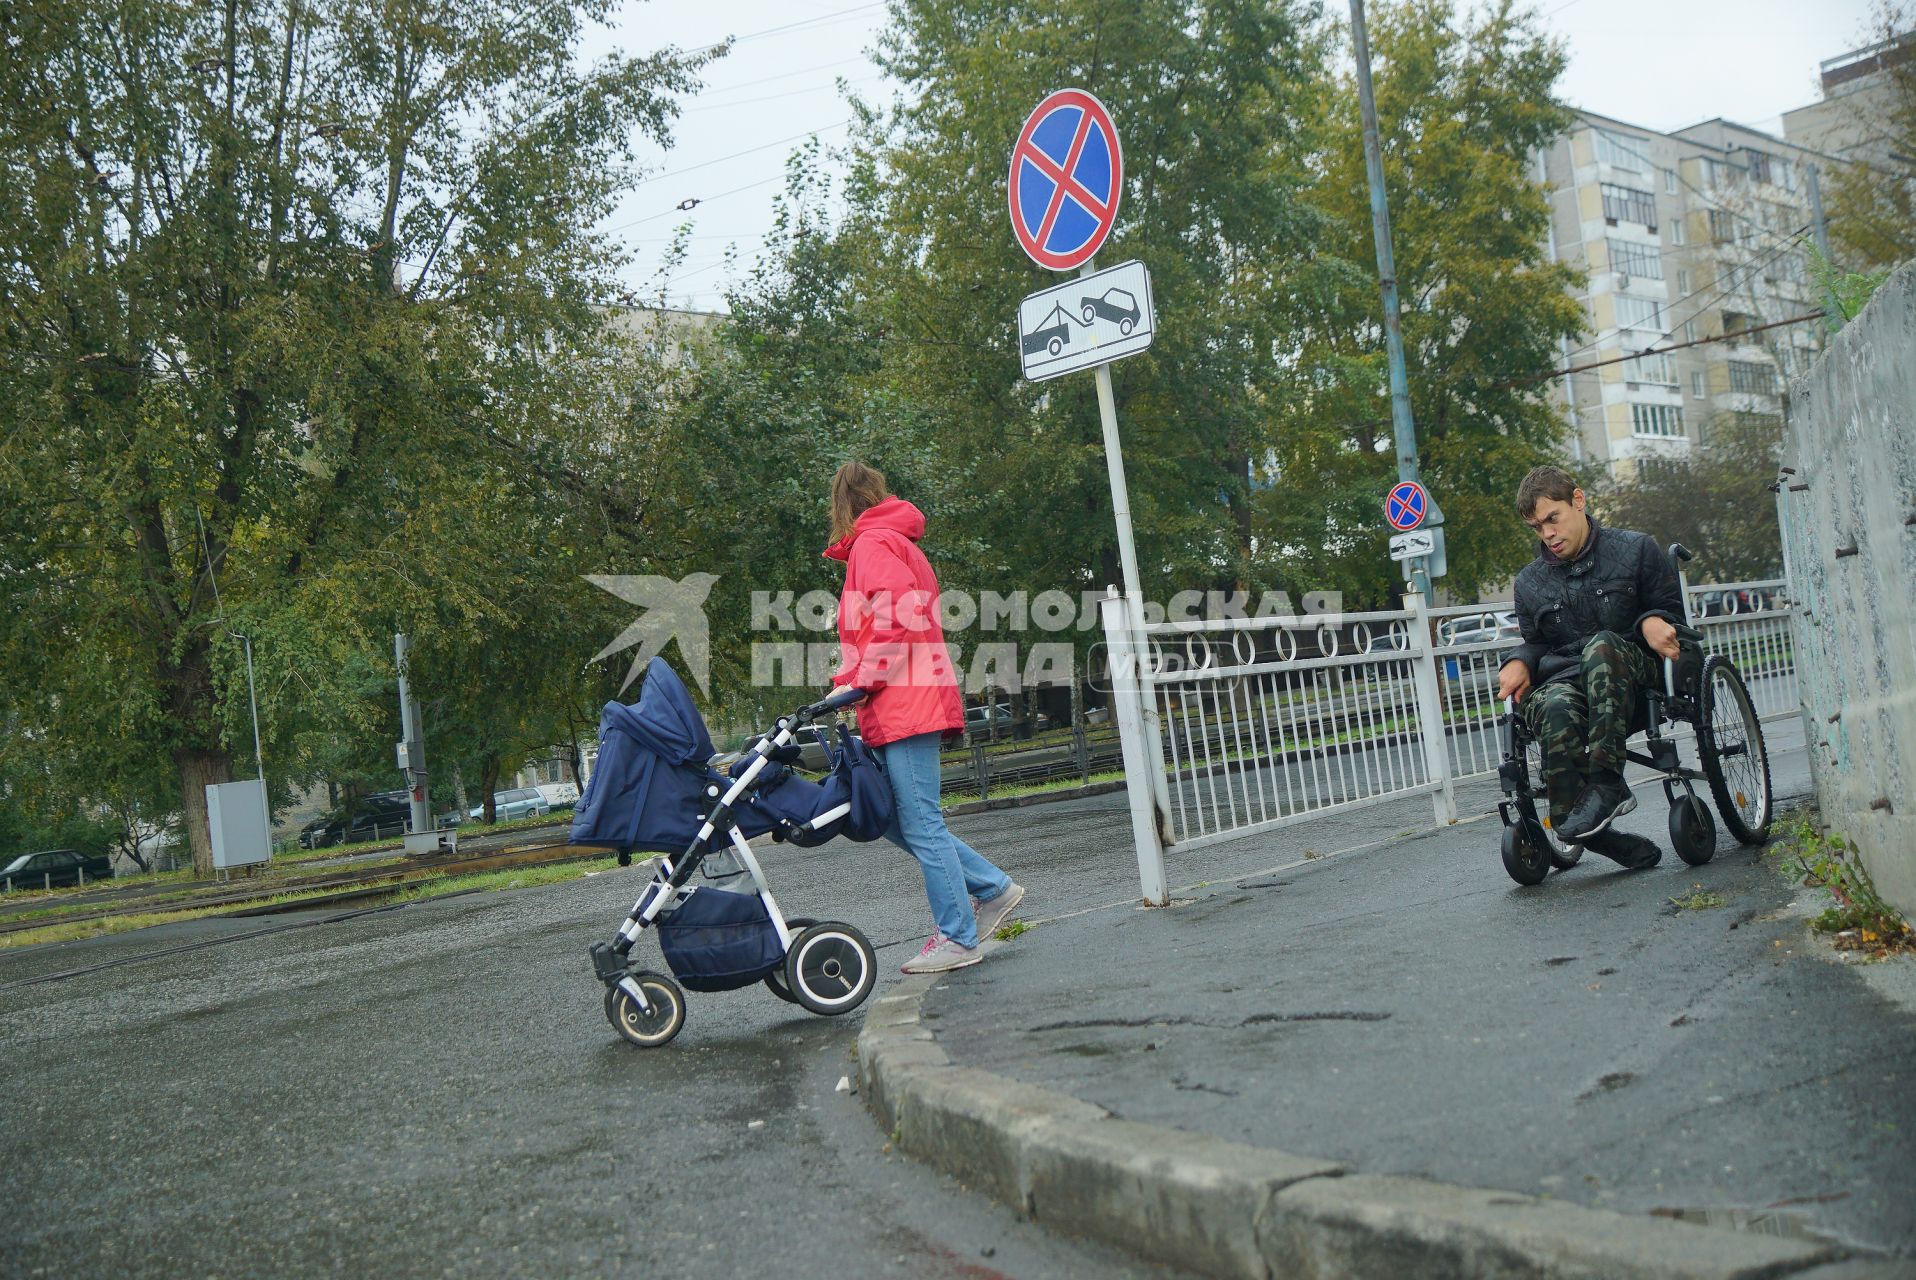 Екатеринбург. Инвалид-колясочник и женщина с детской коляской во время тестирования доступности городской среды для людей с ограниченными возможностями